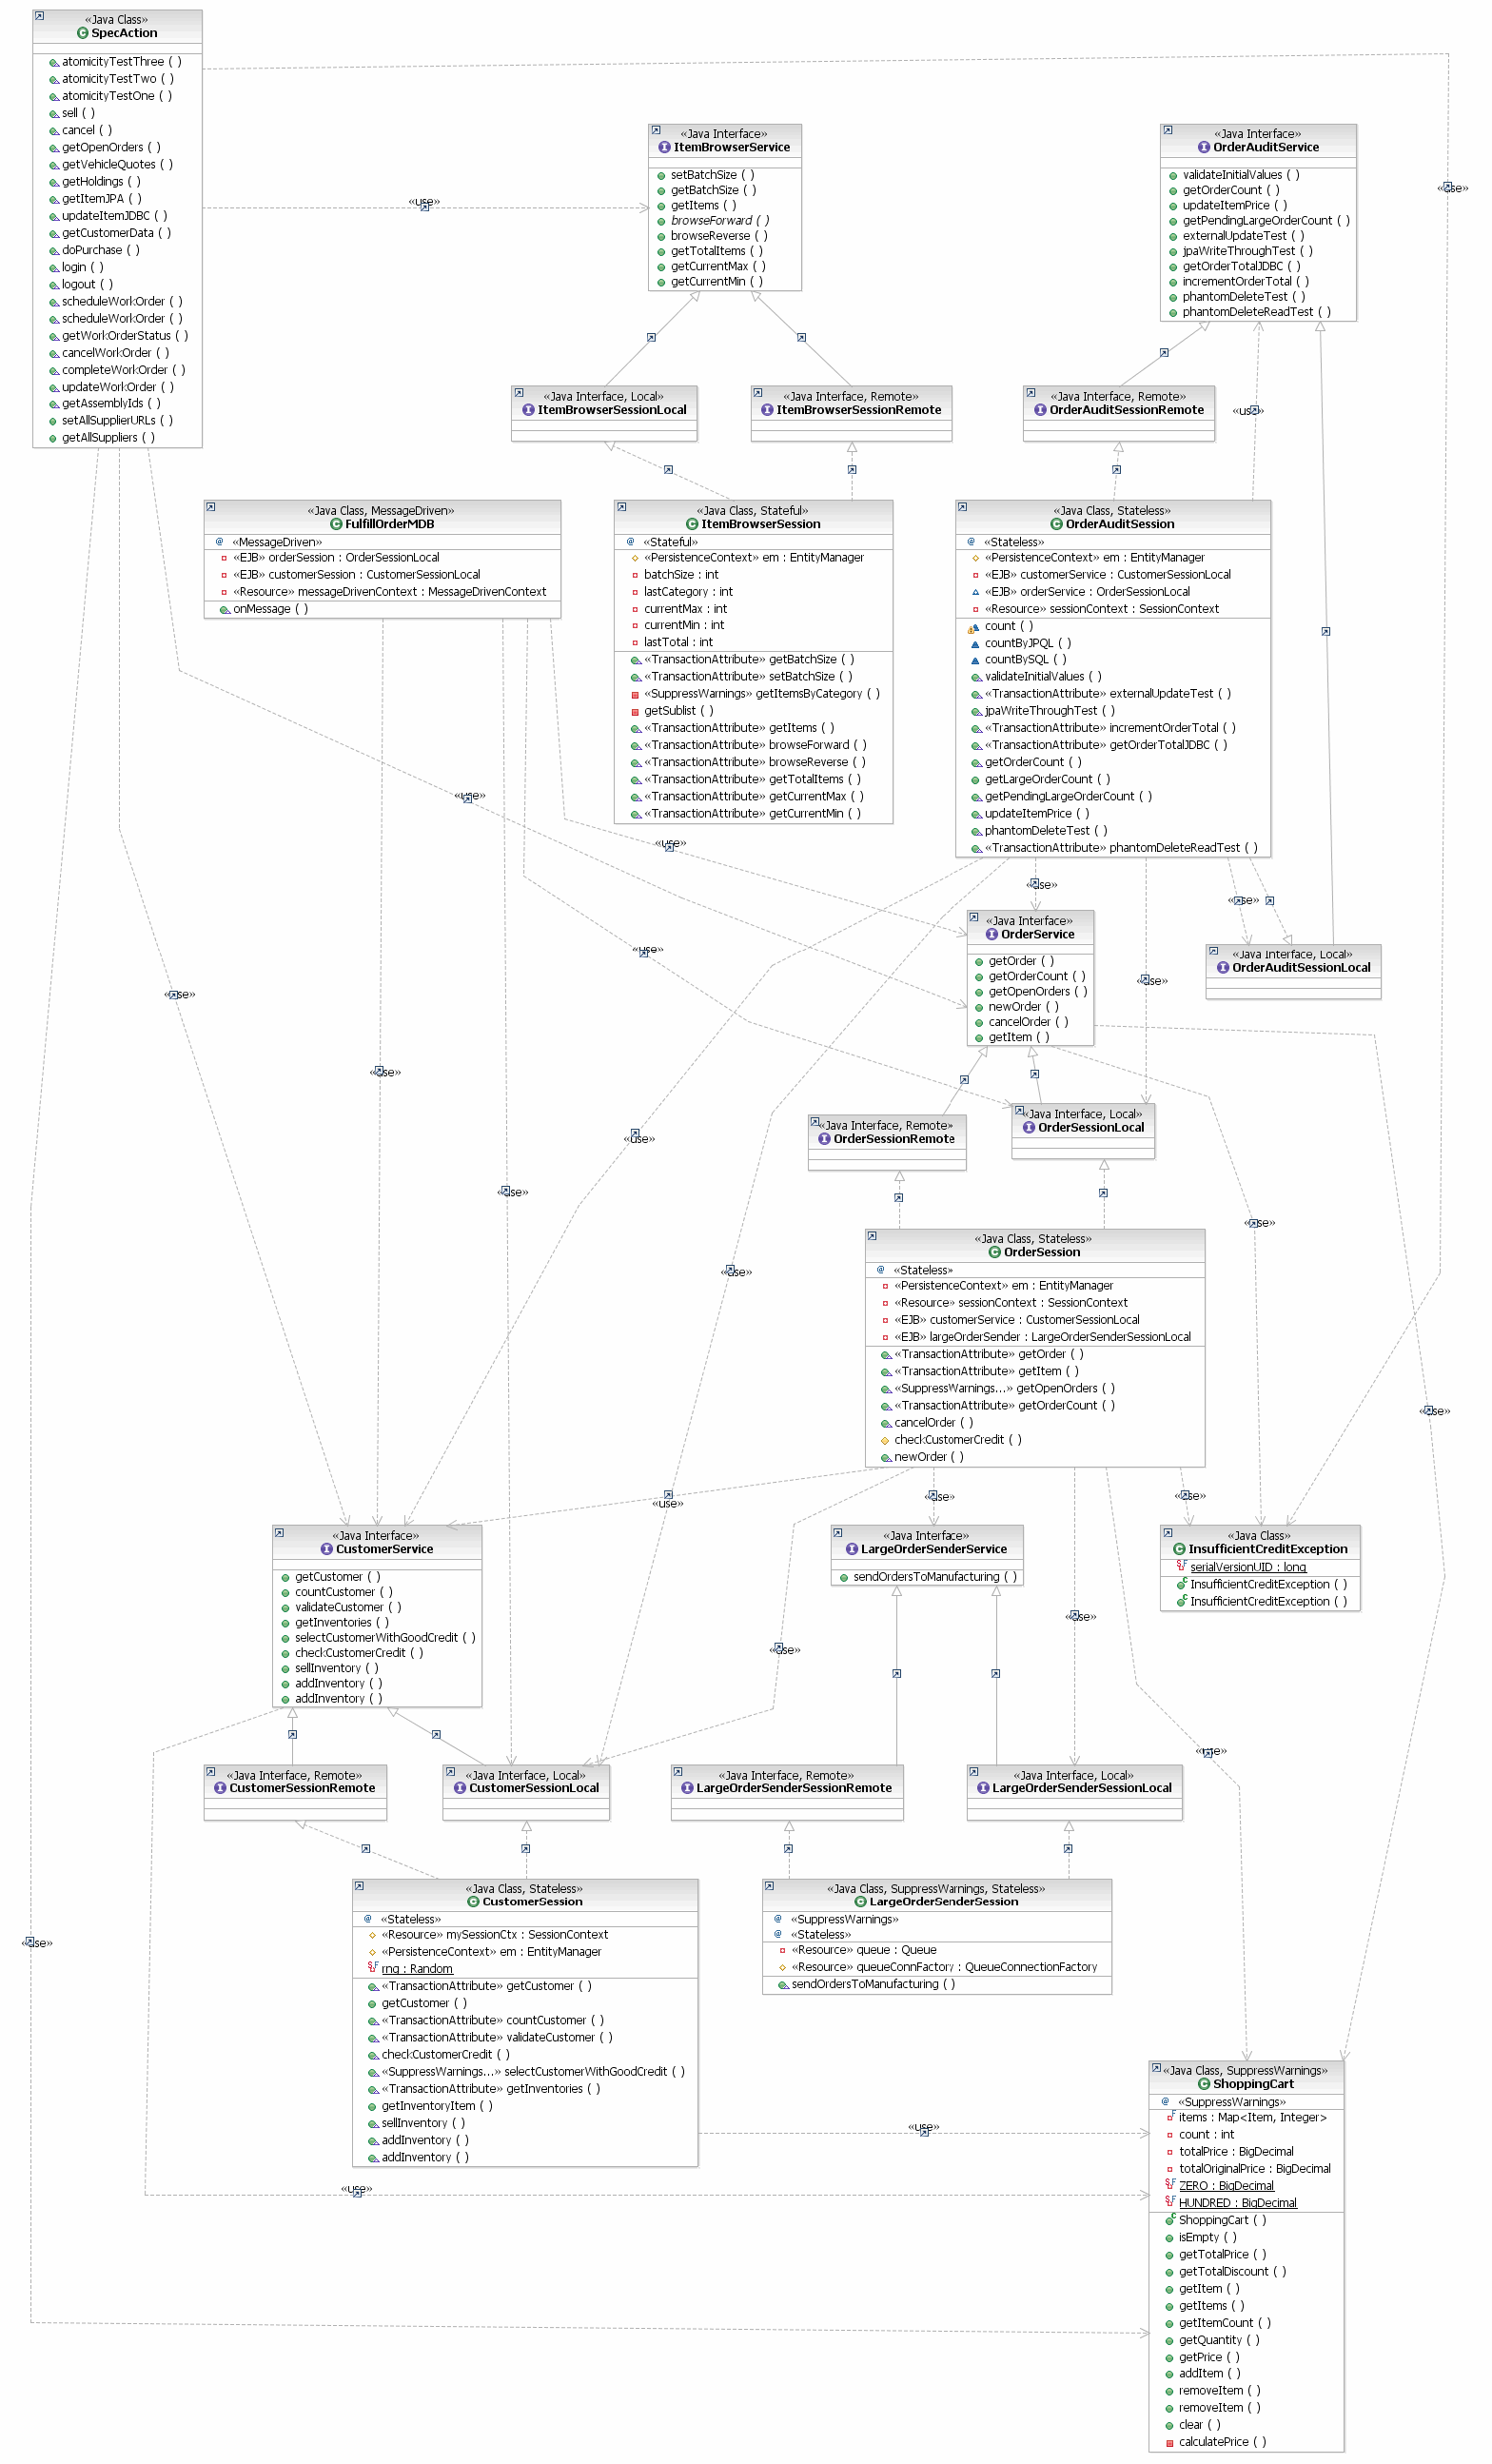 UML diagram for the Orders Domain